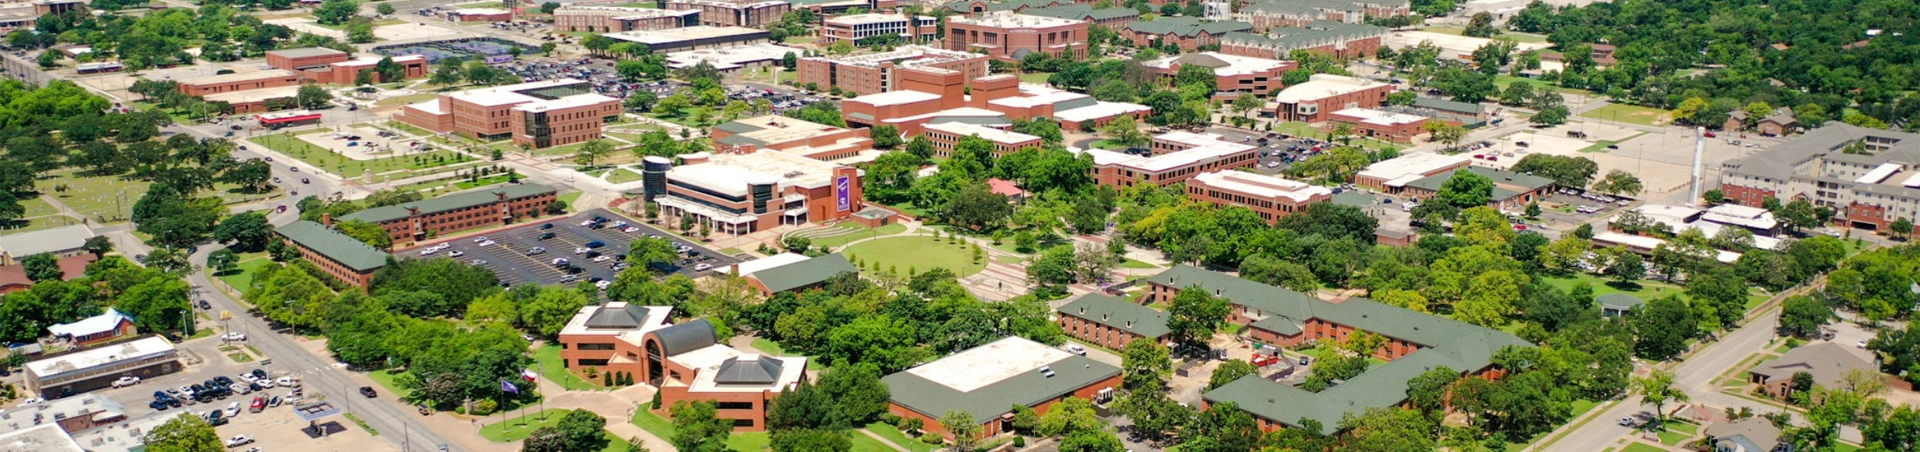 Tarleton State University Campus